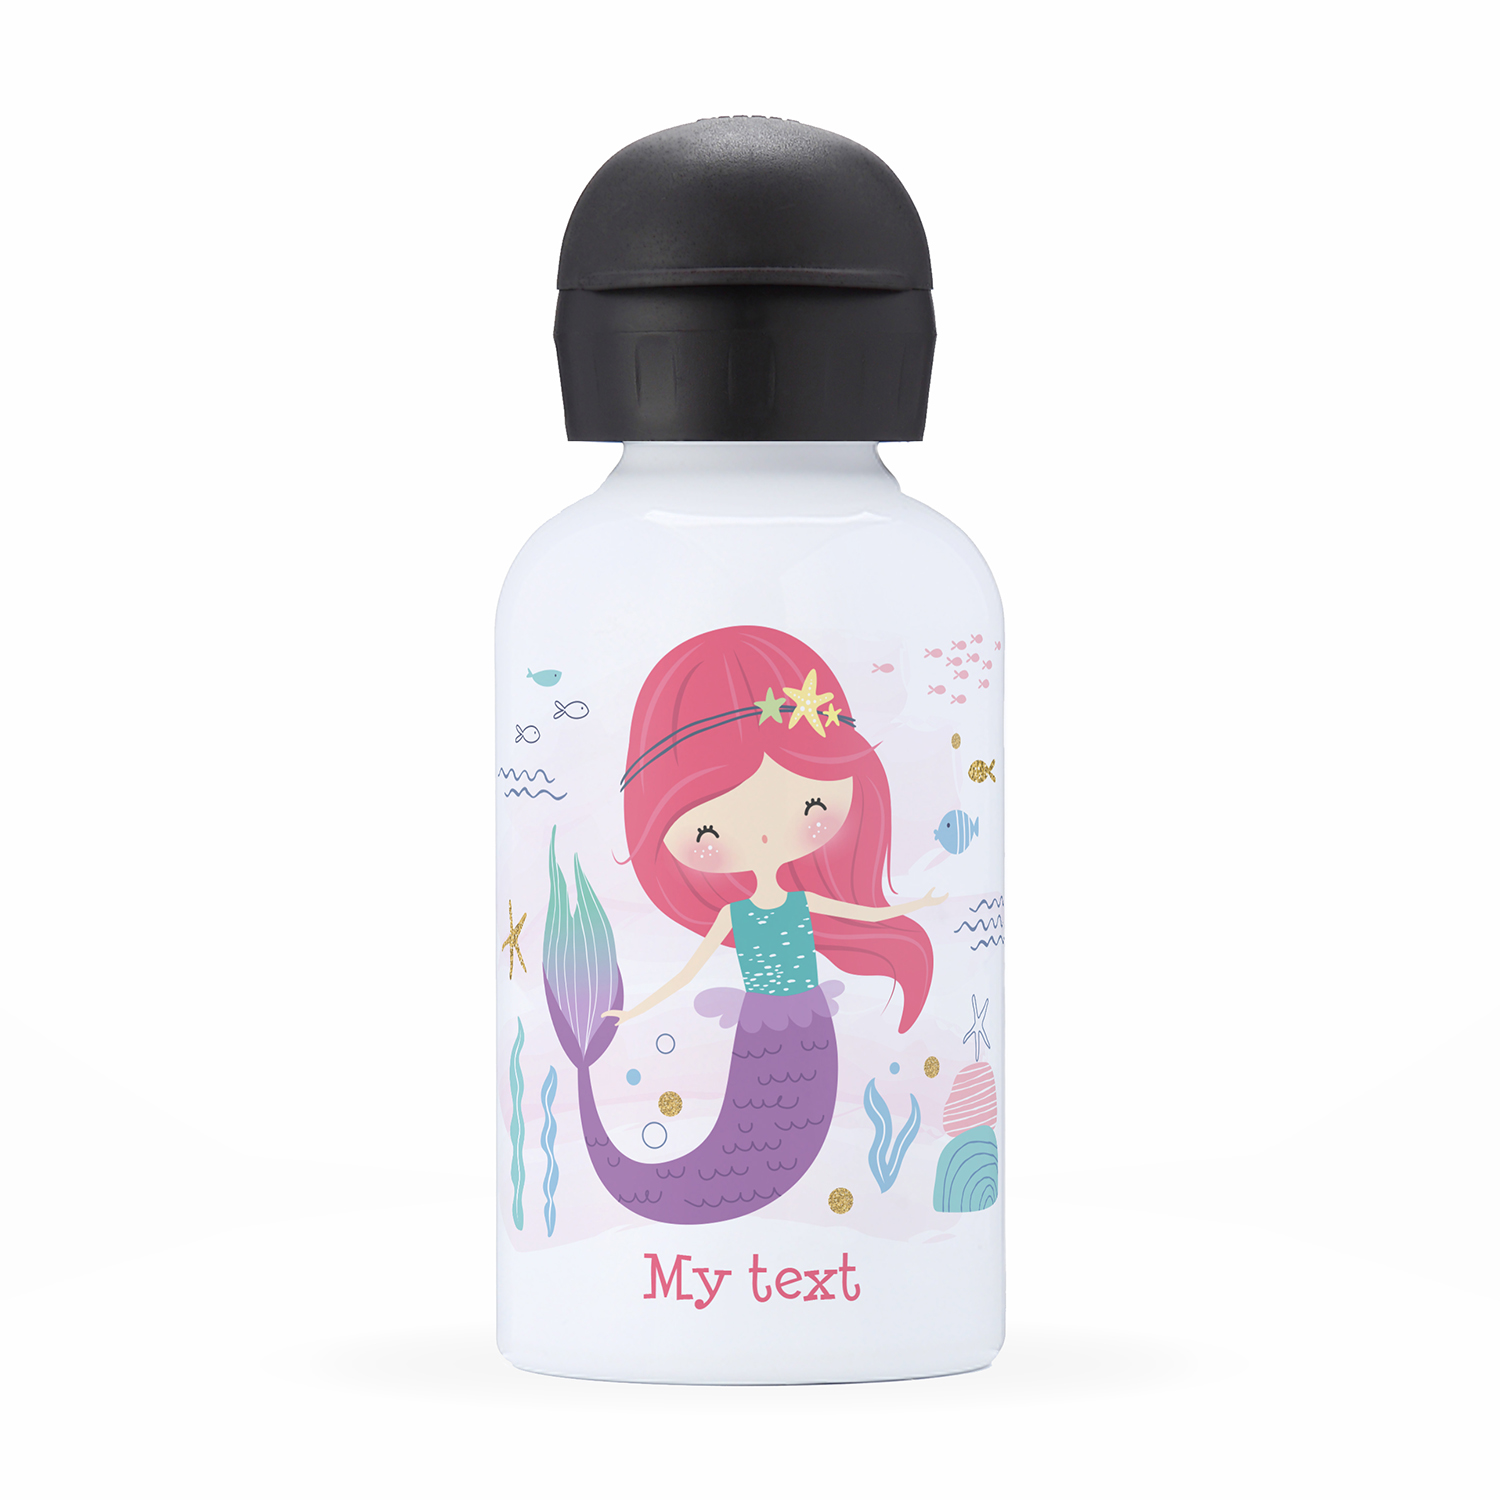 Personalized kids water bottle, mermaid